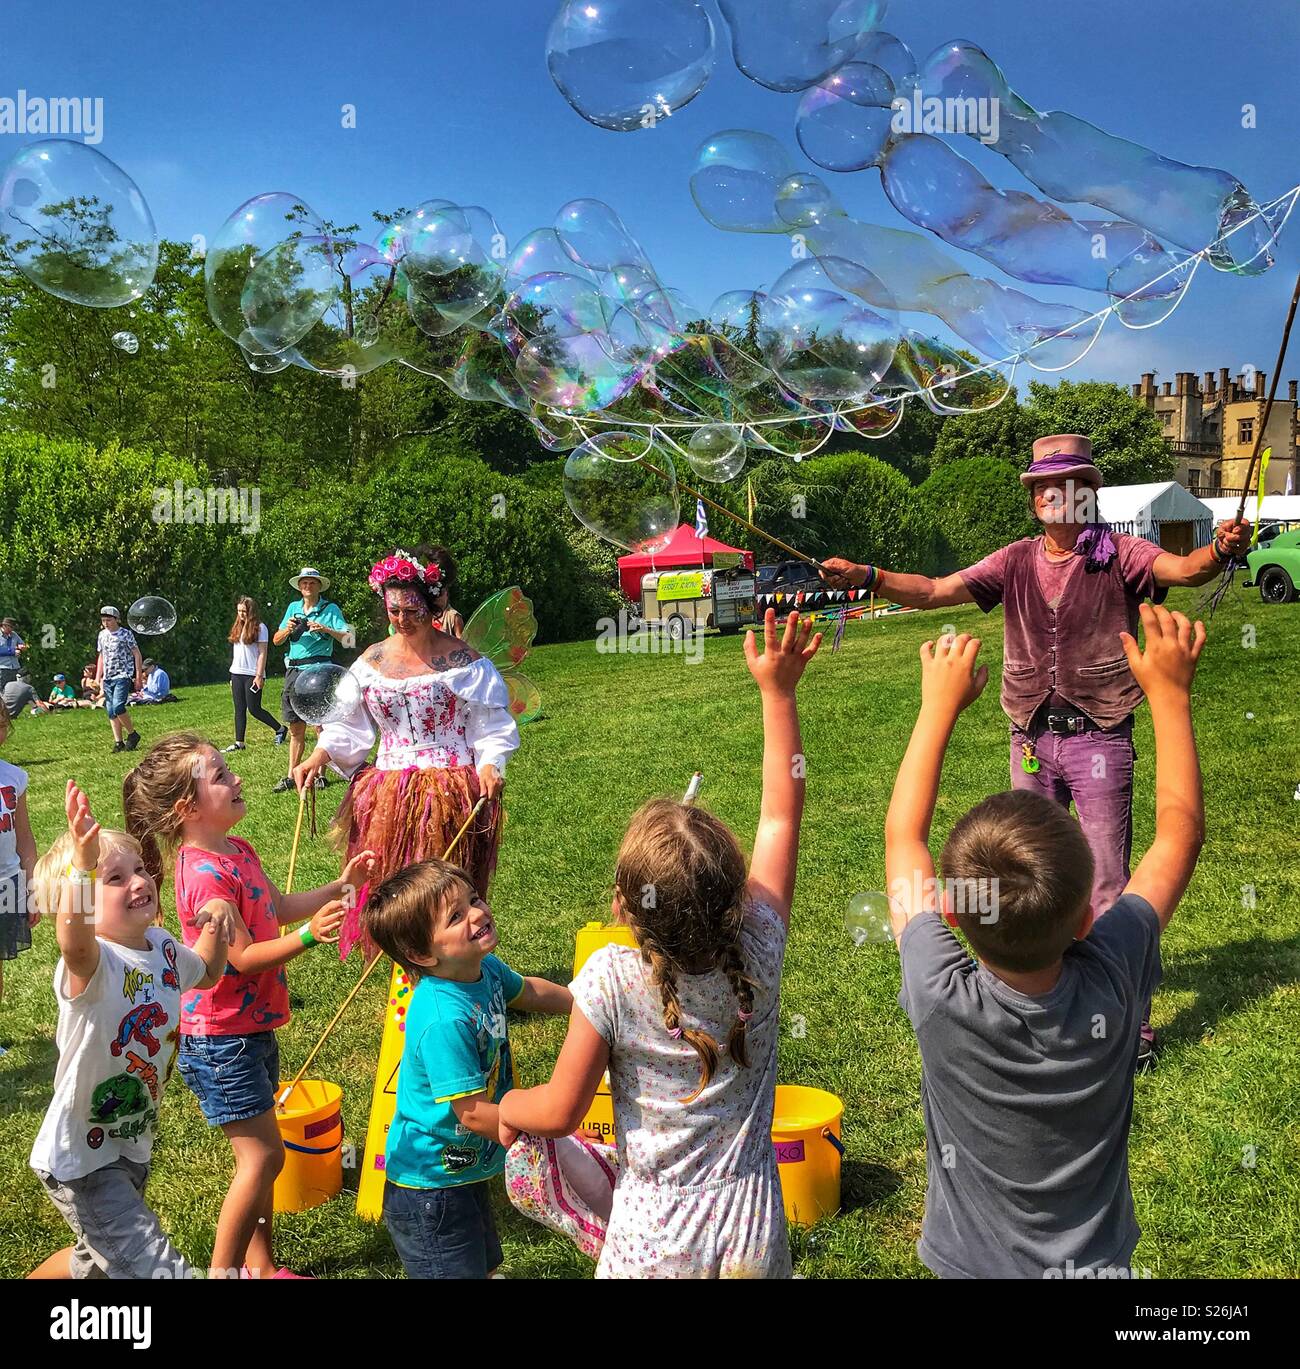 Bubbleman Bulle et créer des bulles de savon, des fées et des enfants d'essayer de les faire éclater, le château de Sherborne Country Fair, Sherborne, Dorset, Angleterre Banque D'Images